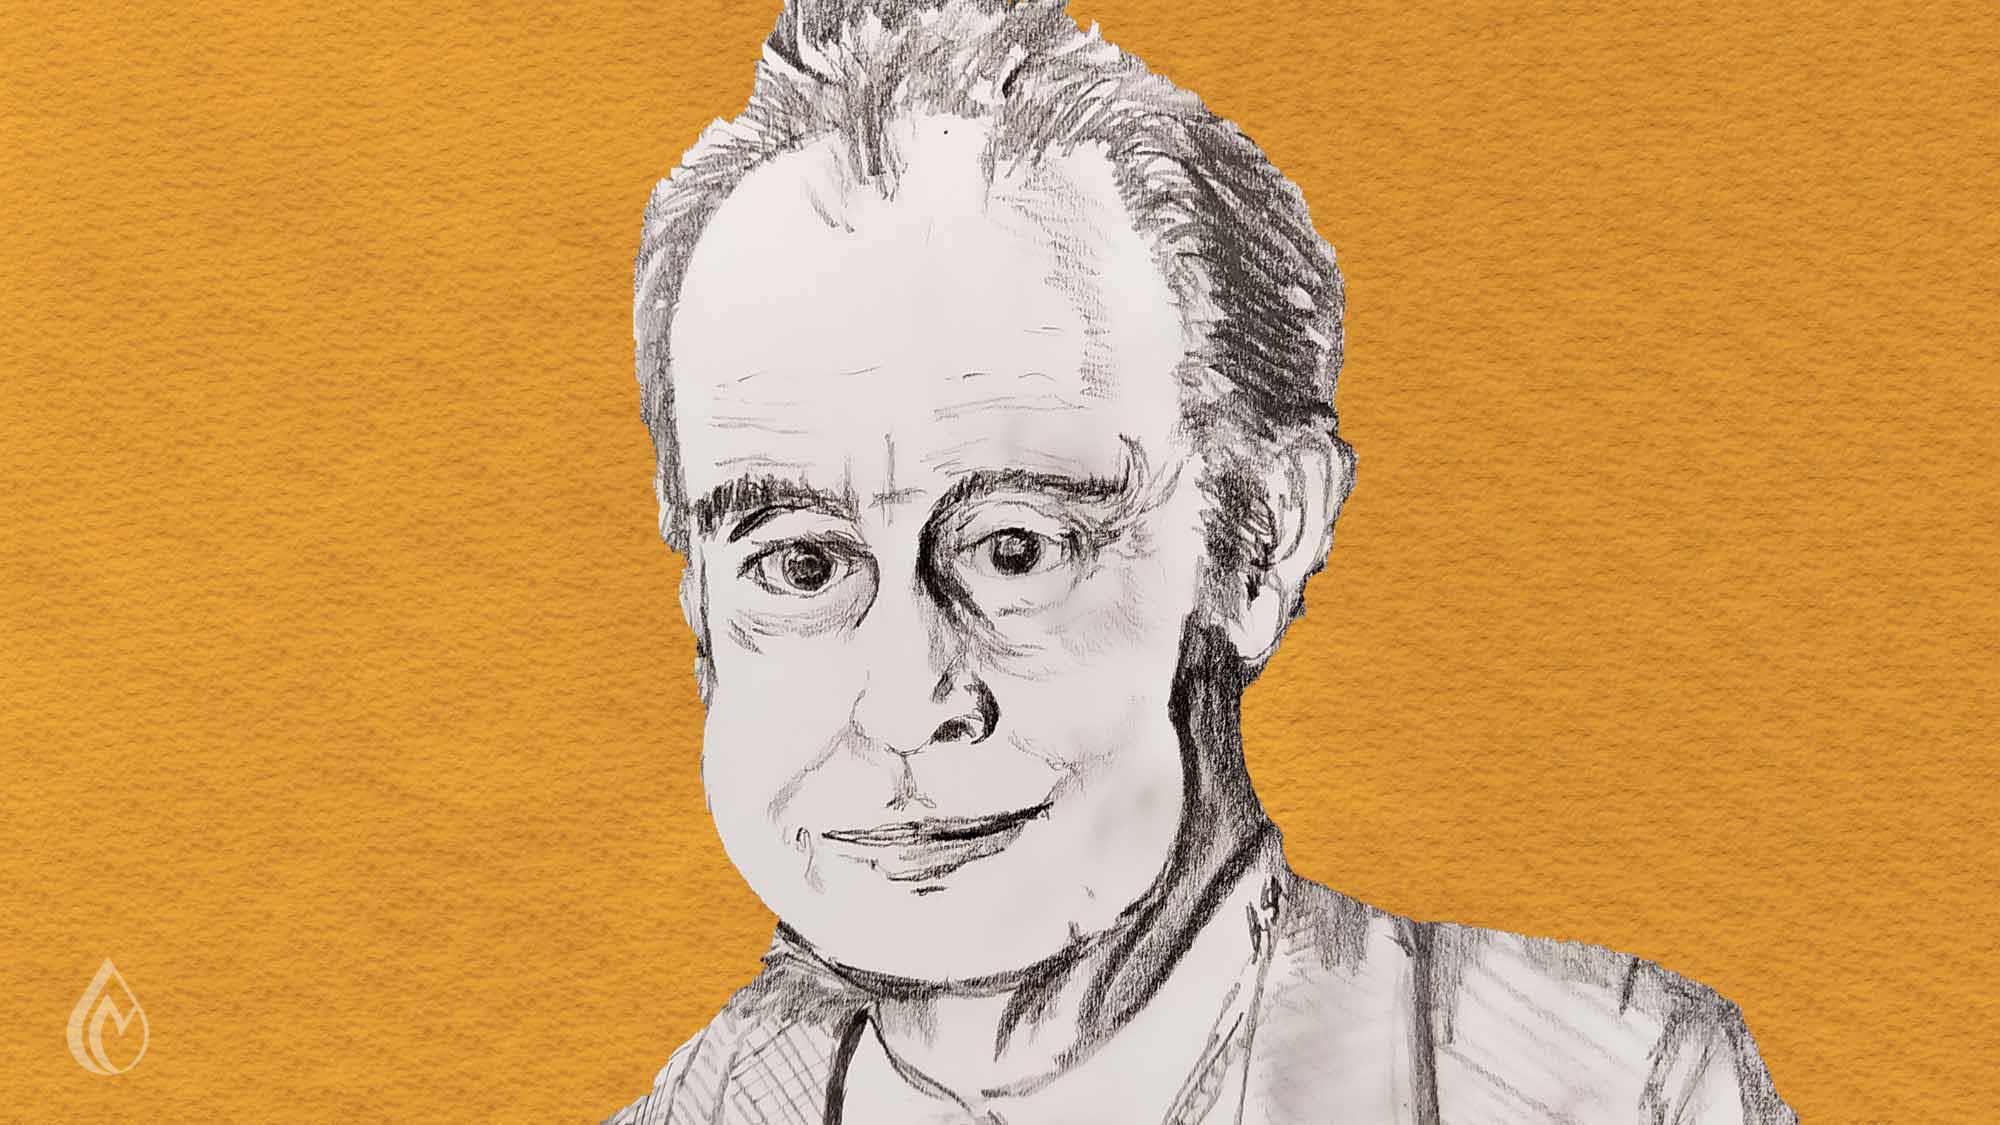 Tante curiosità su Italo Calvino